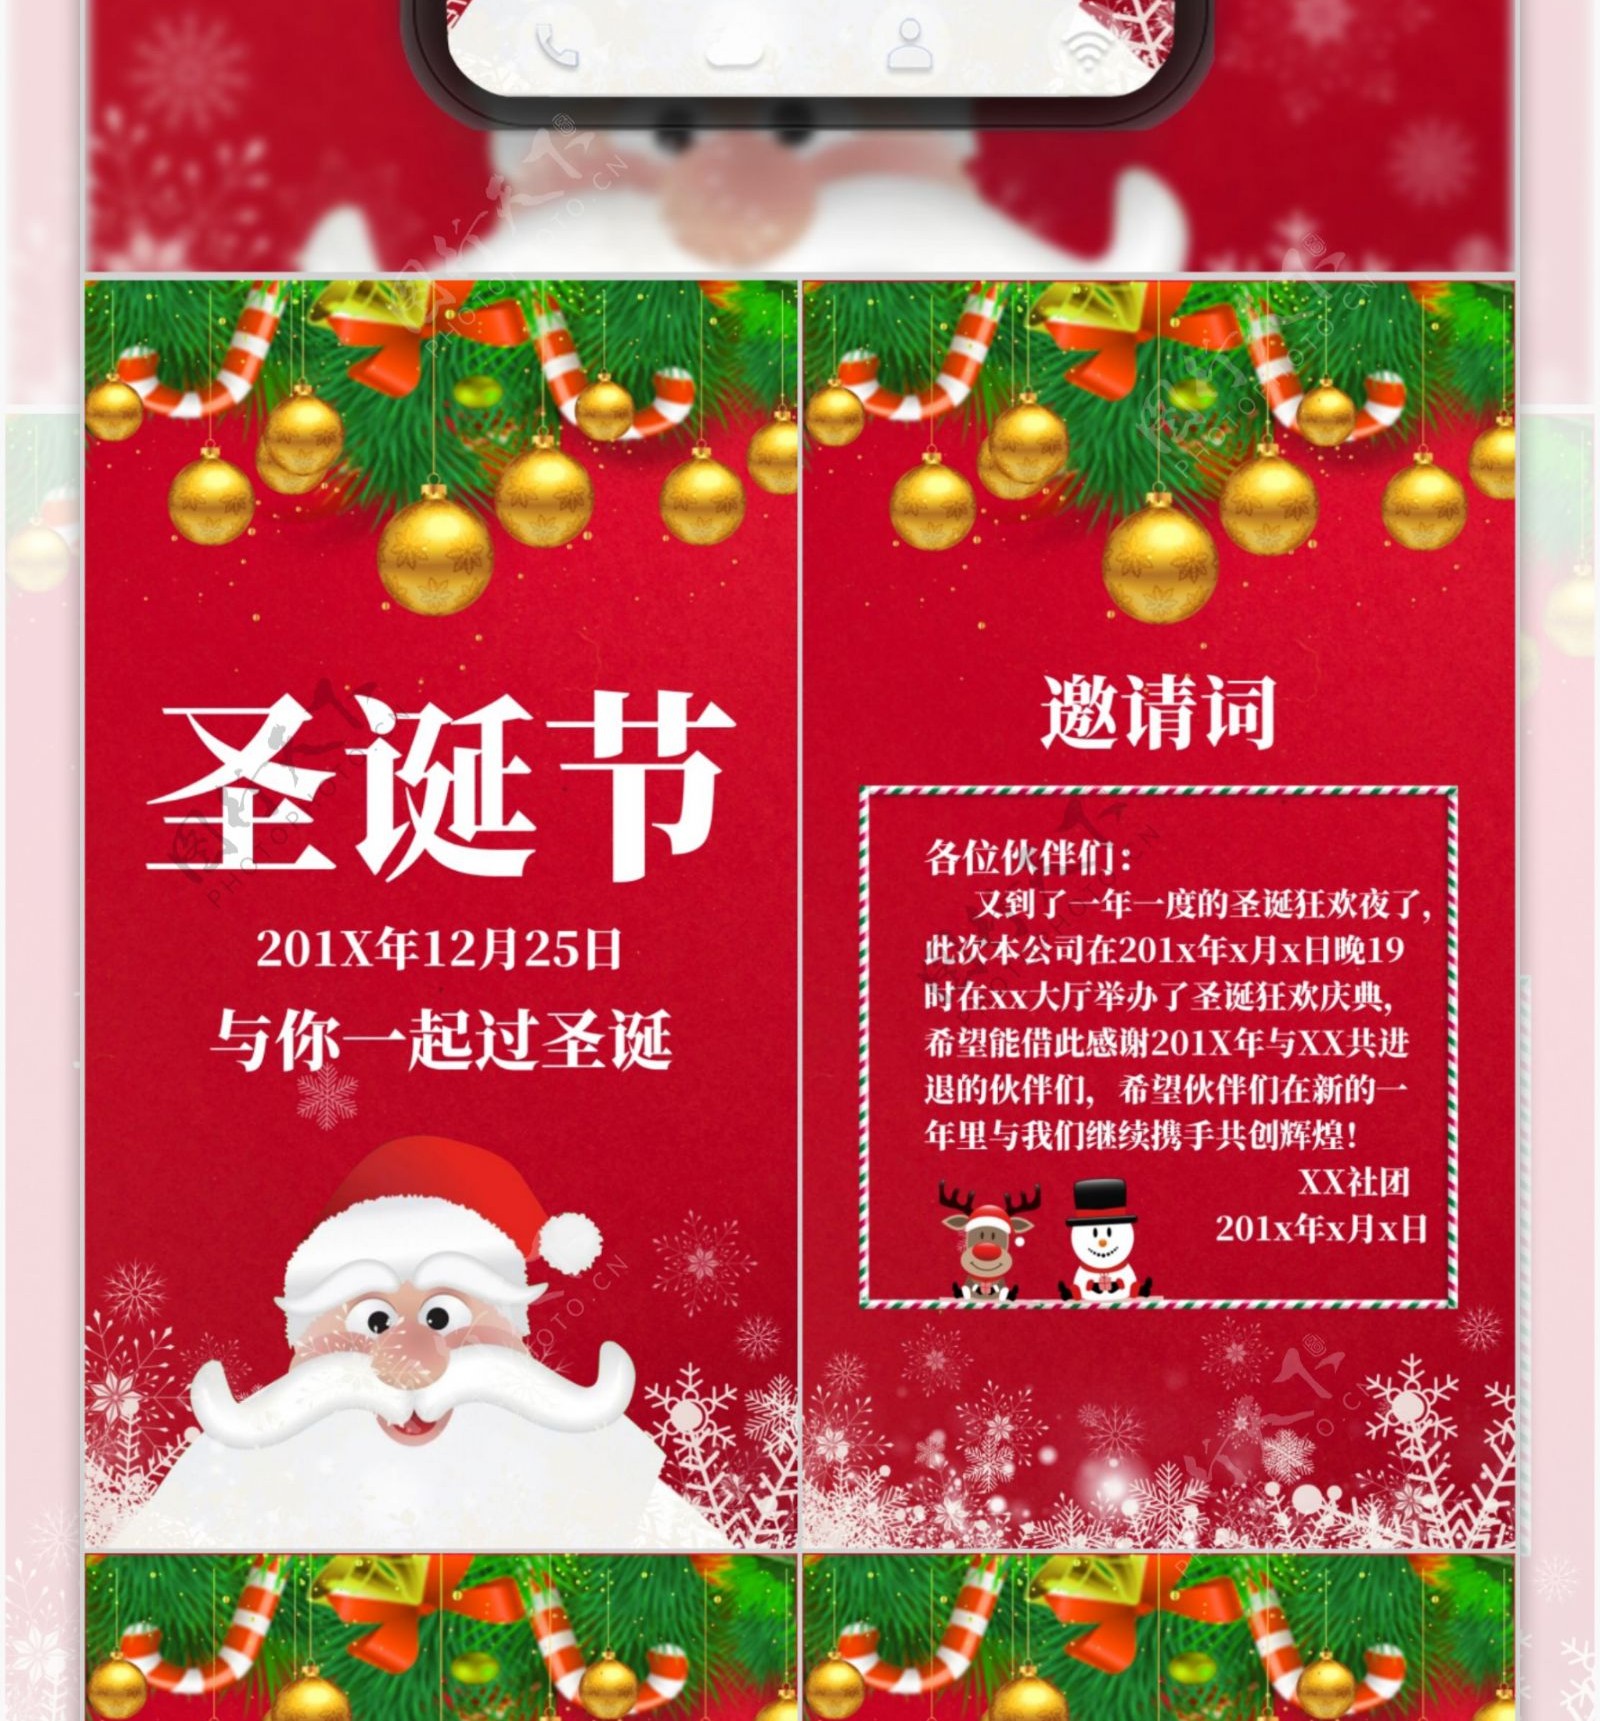 公司圣诞节活动电子贺卡邀请函